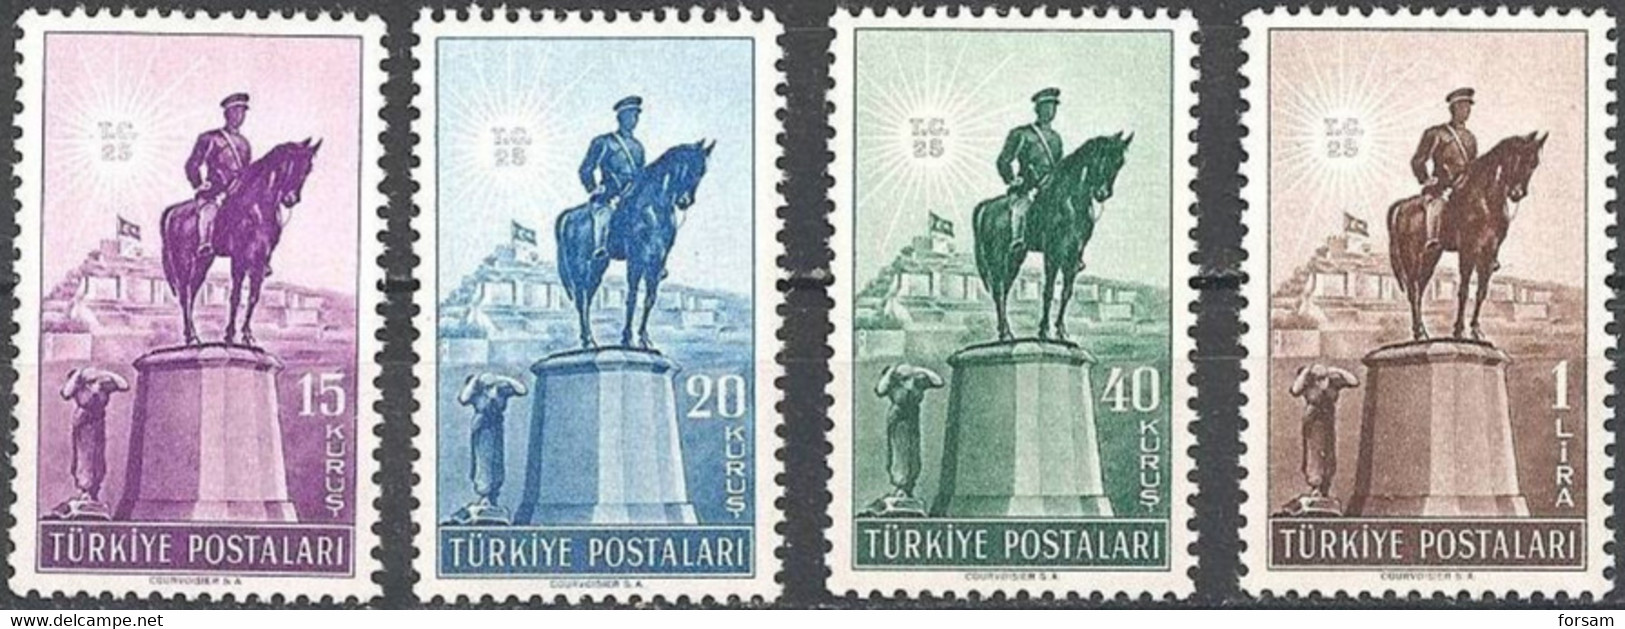 TURKEY..1948..Michel # 1221-1224...MLH...MiCV - 8.50 Euro. - Unused Stamps